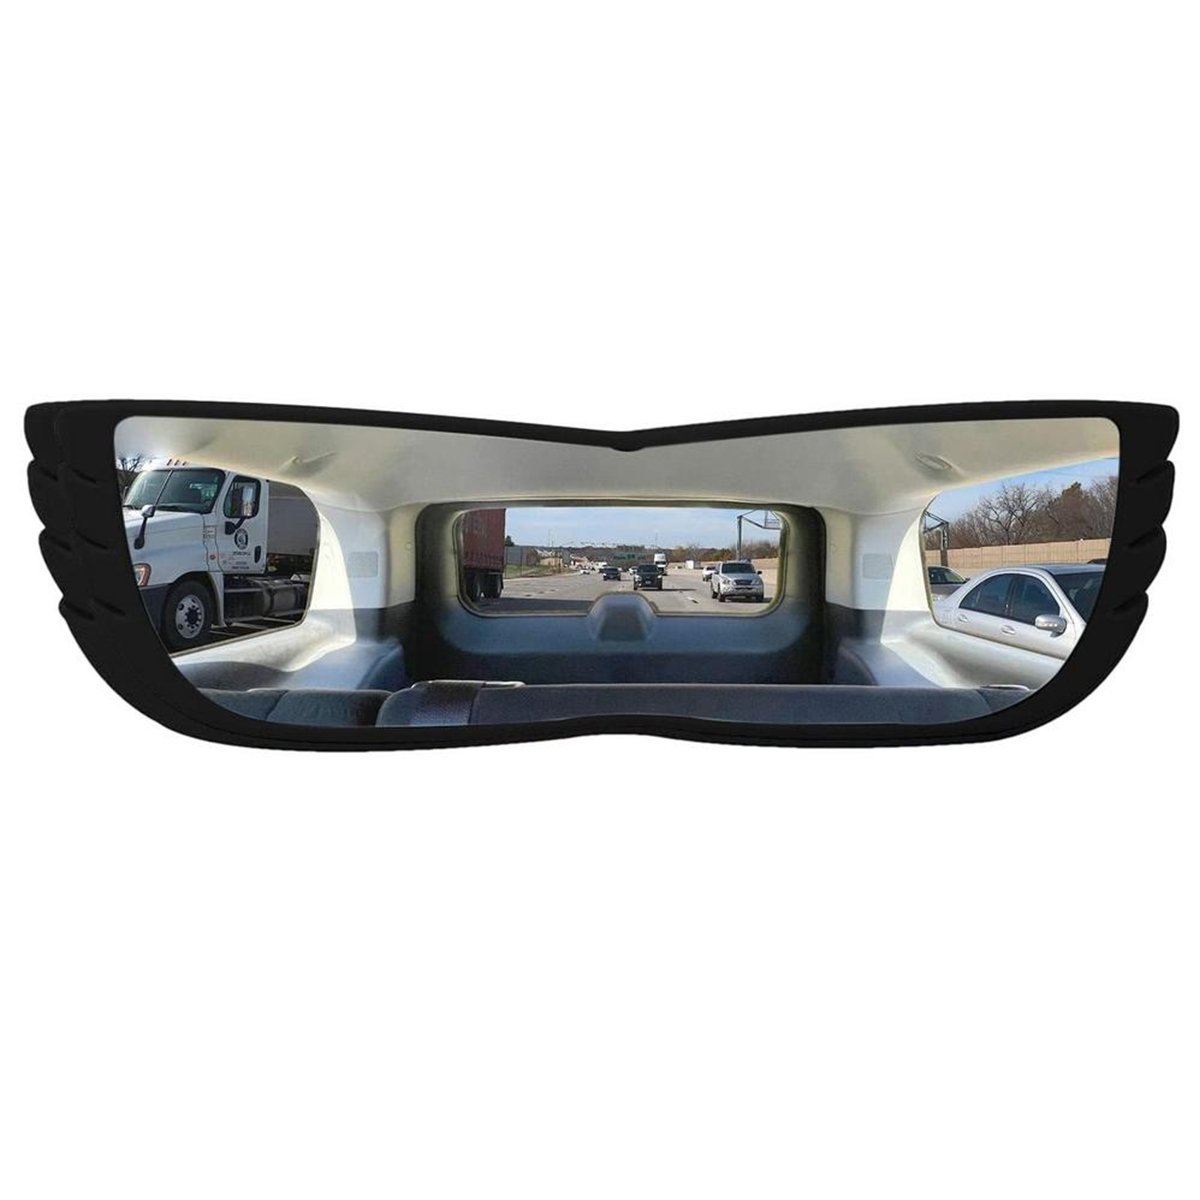 Espelho Retrovisor 160 Graus Carro Automotivo Visao Ampla Caminhao Alta Visibilidade Panoramico Conv - 2